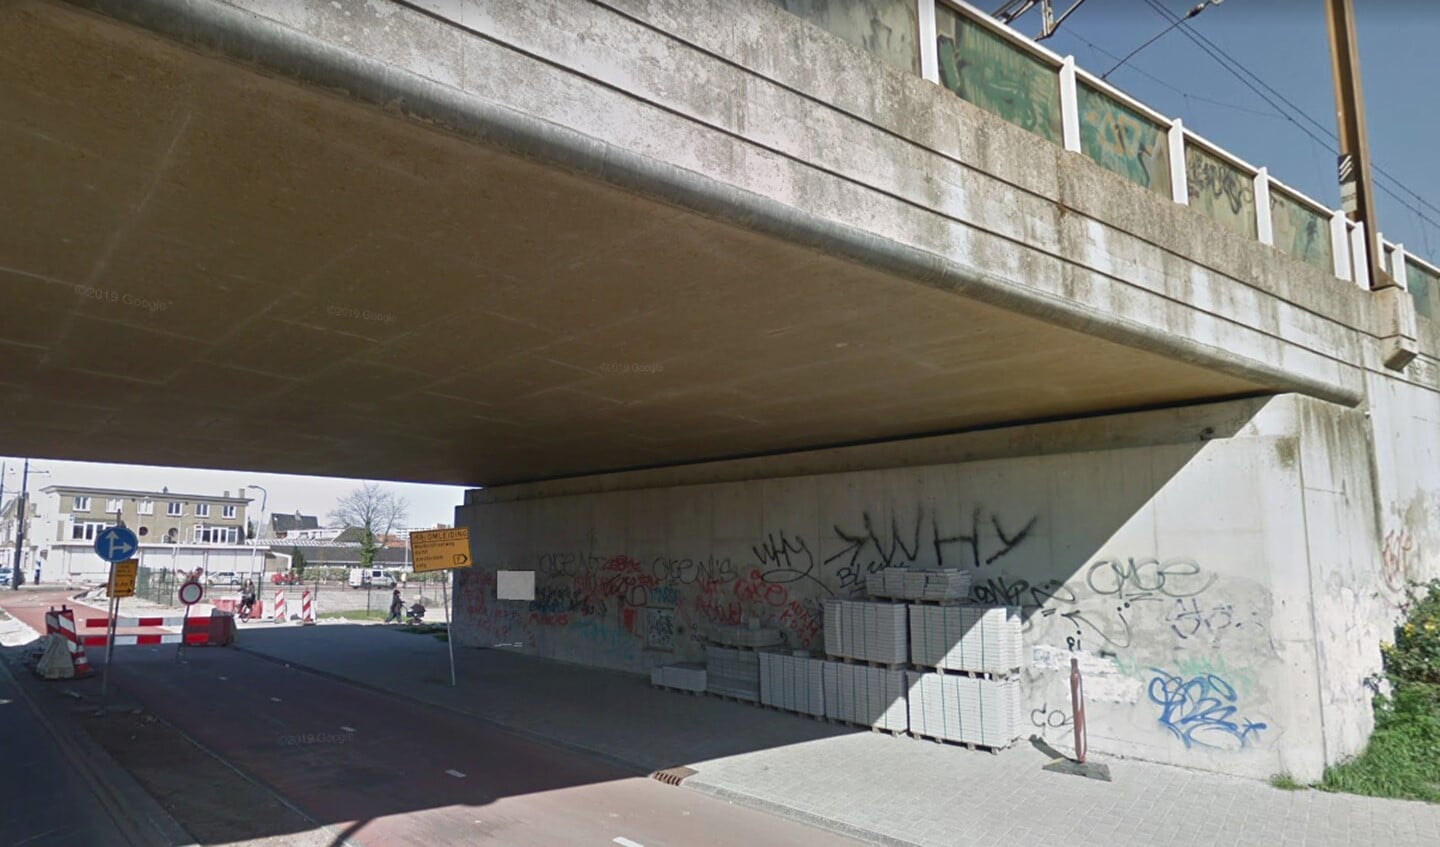 De Muiderstraatweg is mooi opgeknapt, maar het viaduct zit vol graffiti.